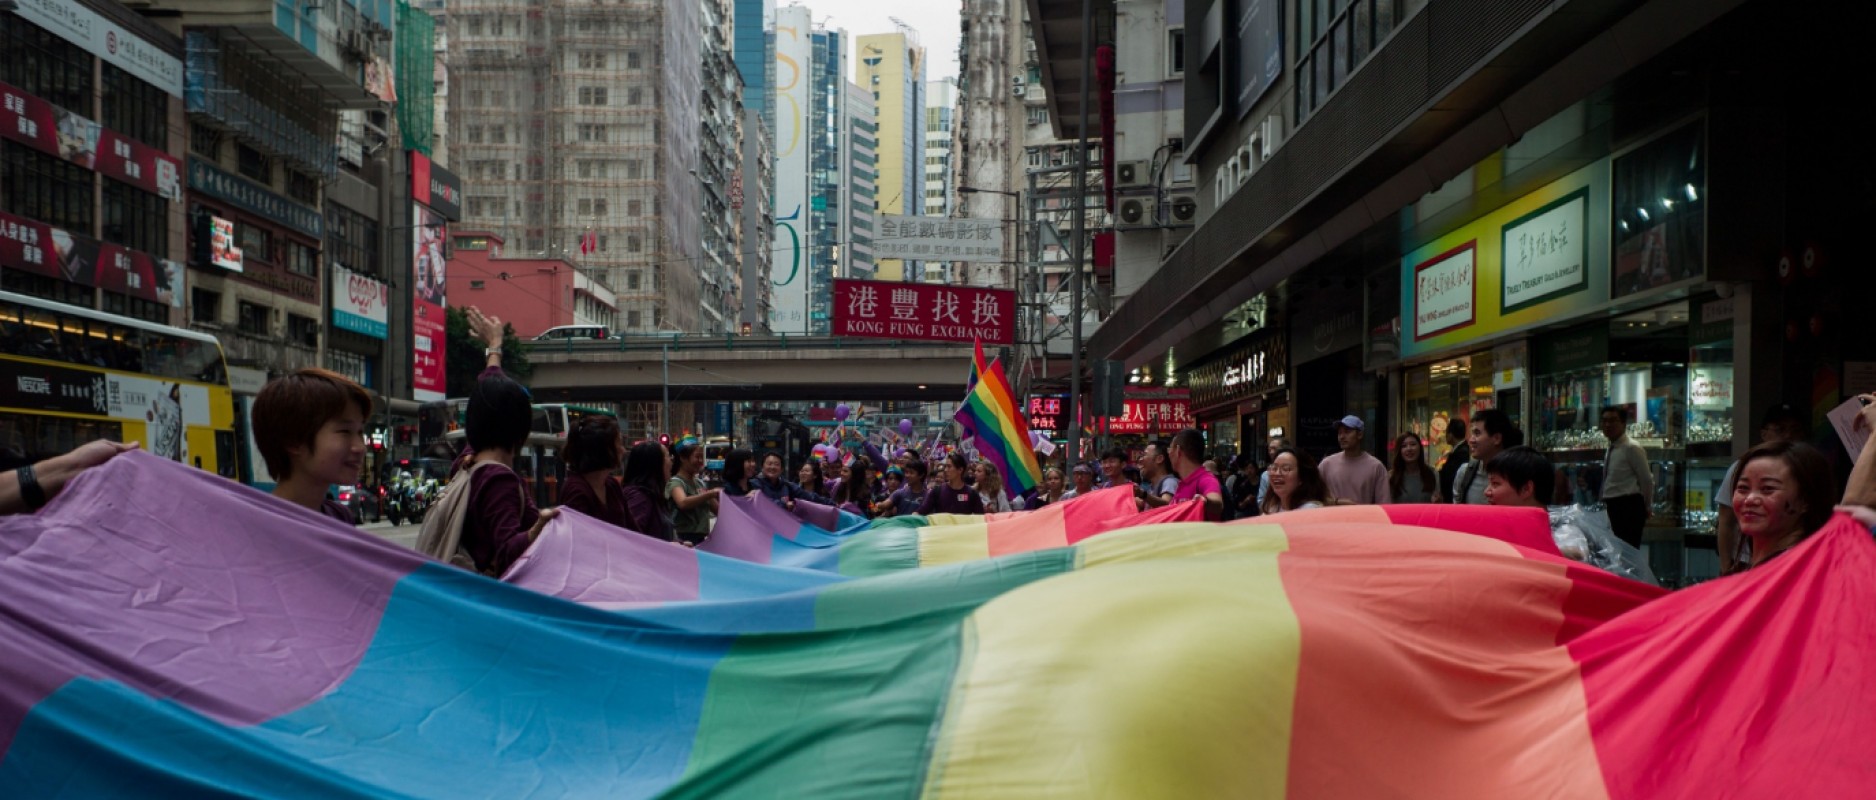 Hong Kong met fin à une émission emblématique dédiée aux droits LGBTQ